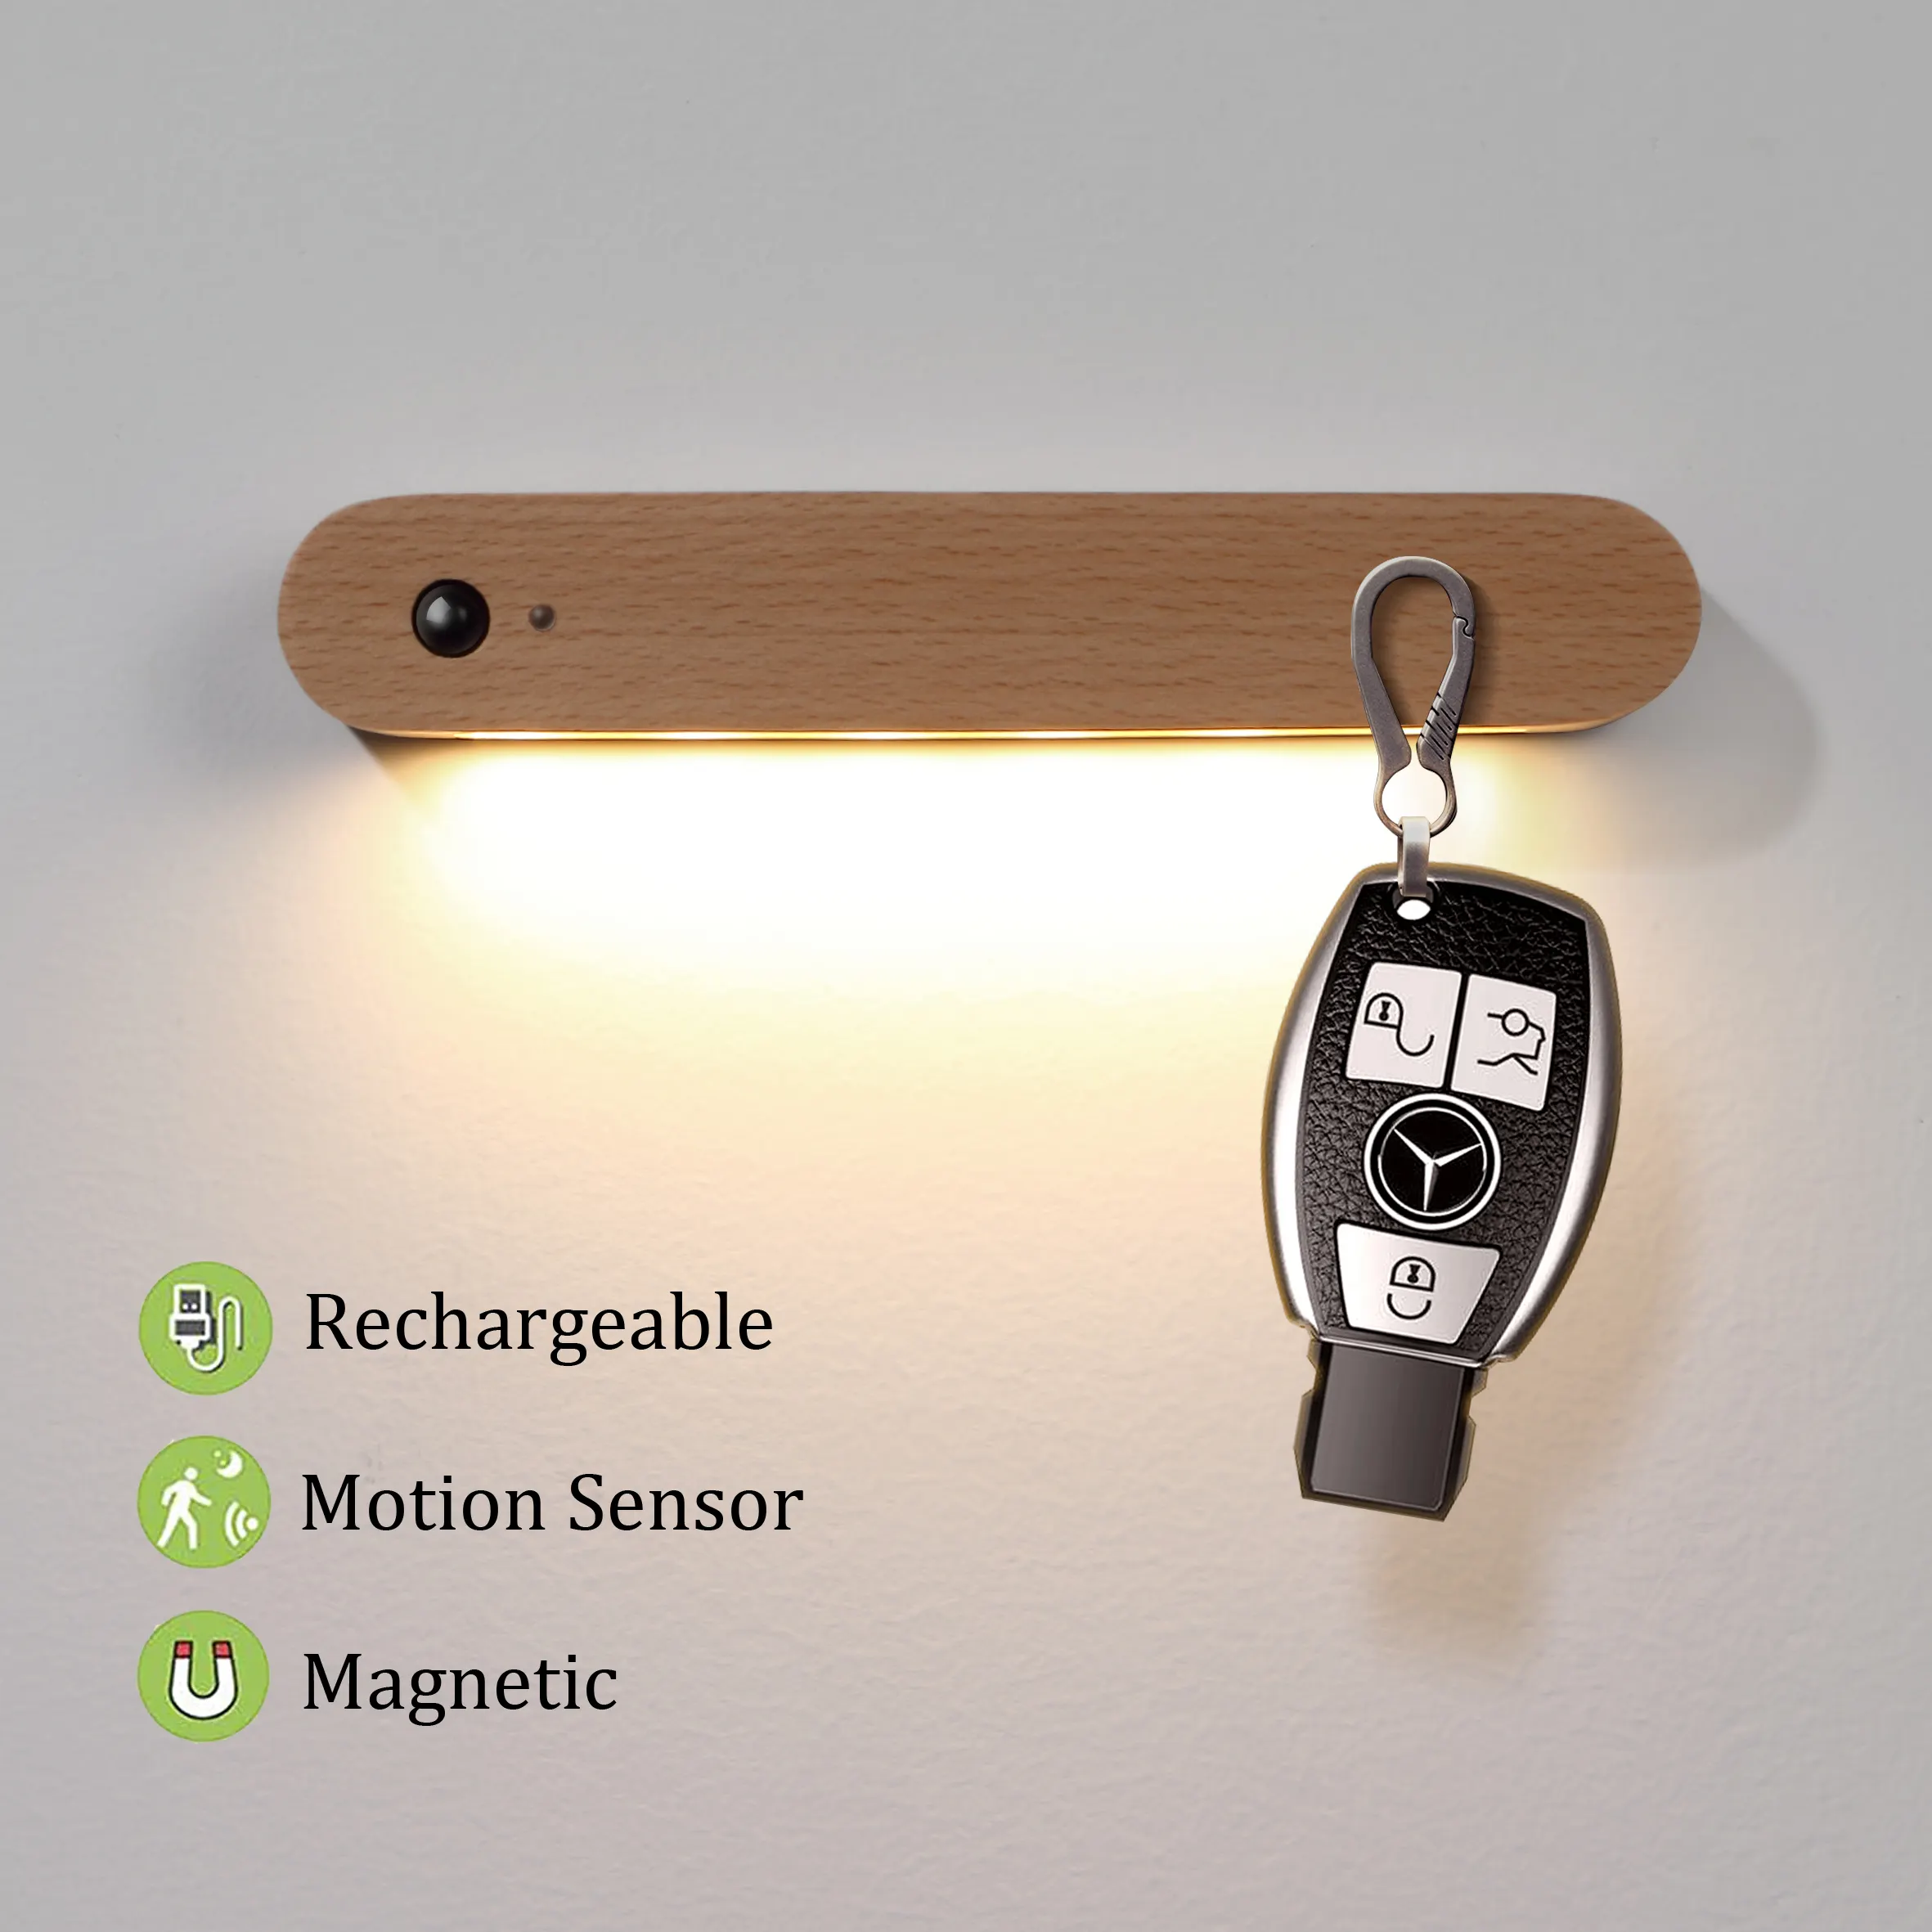 Llavero magnético inalámbrico recargable por USB, luz de pared con Sensor LED inteligente de cuerpo humano, buena calidad